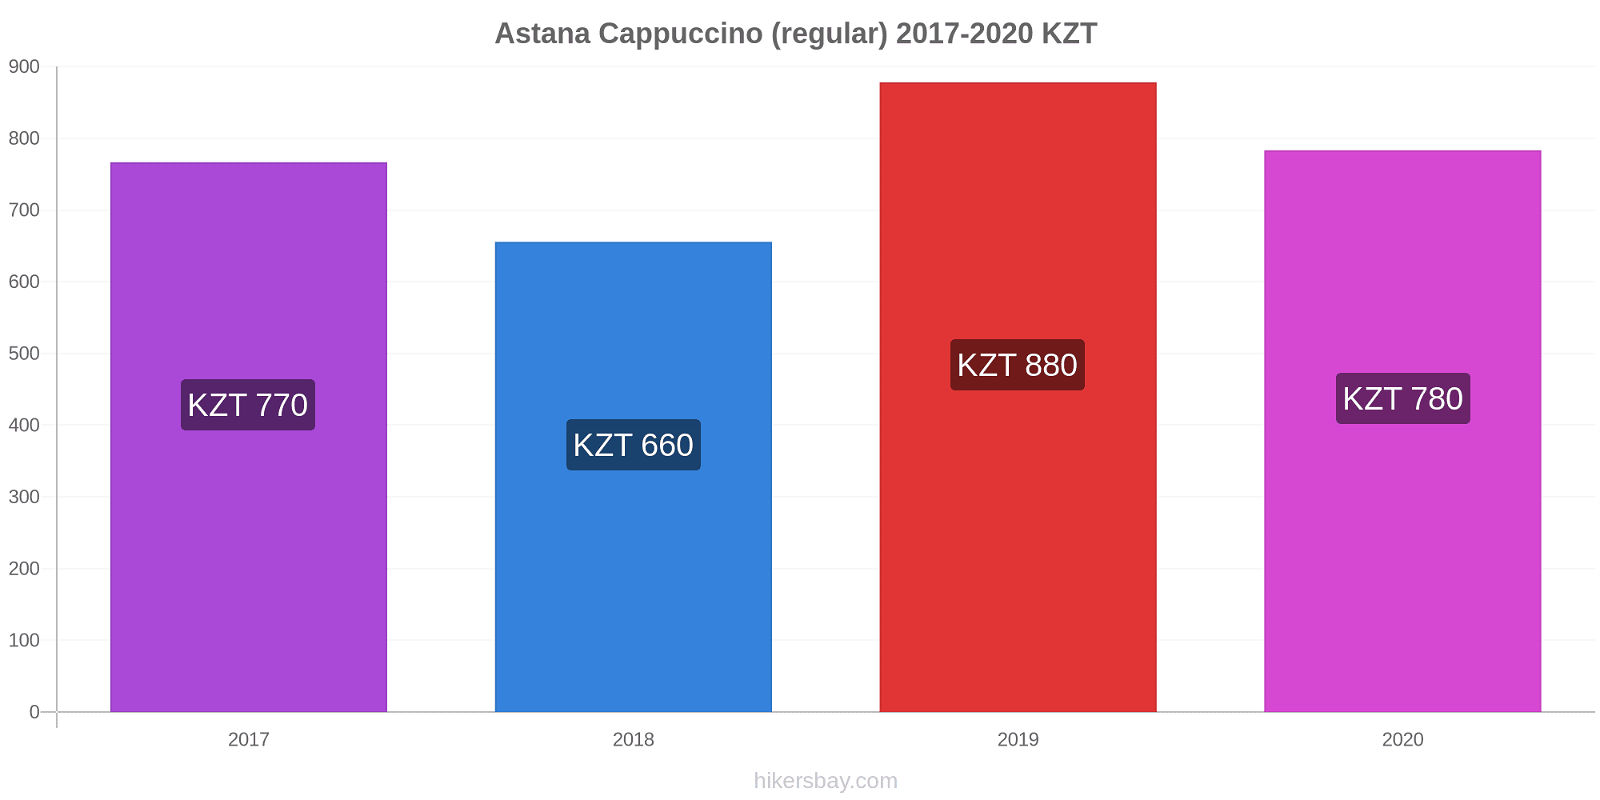 Astana price changes Cappuccino (regular) hikersbay.com